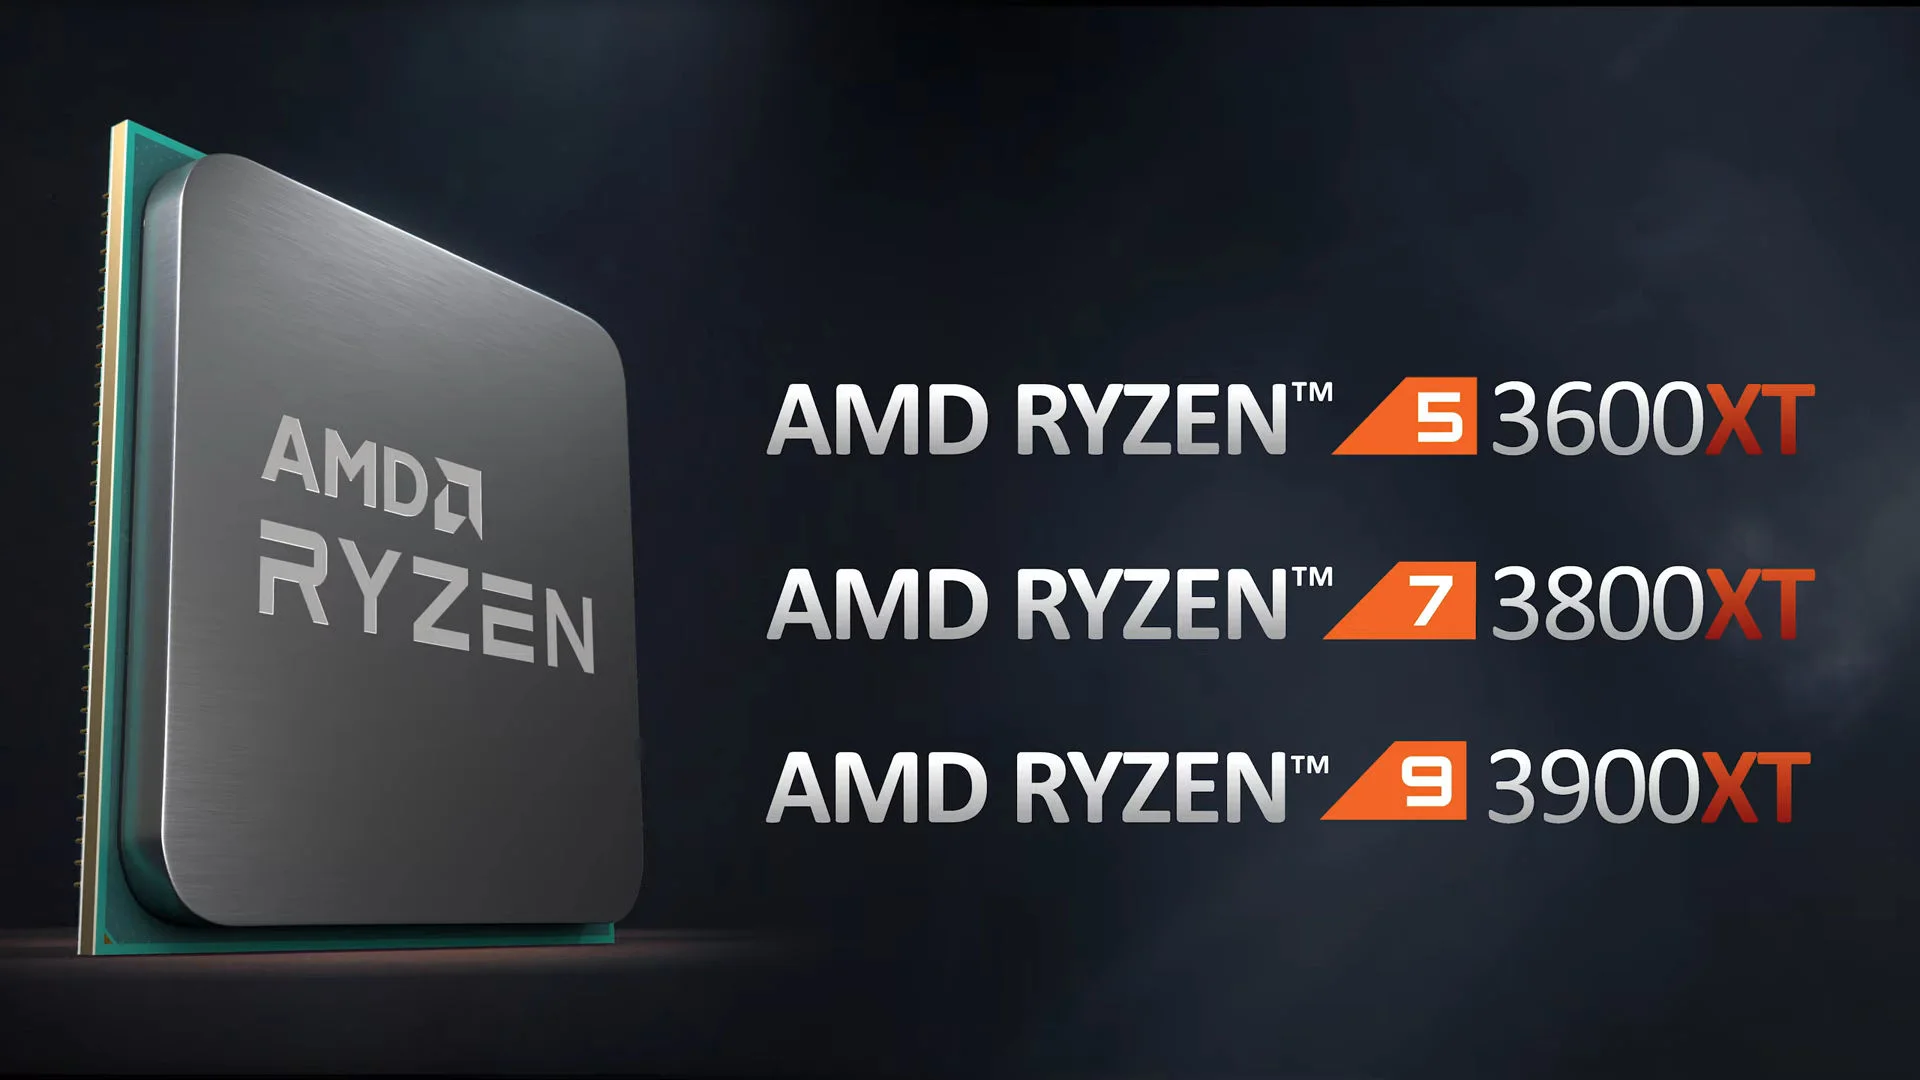 AMD представила линейку процессоров с повышенной мощностью Ryzen 3000XT - фото 2